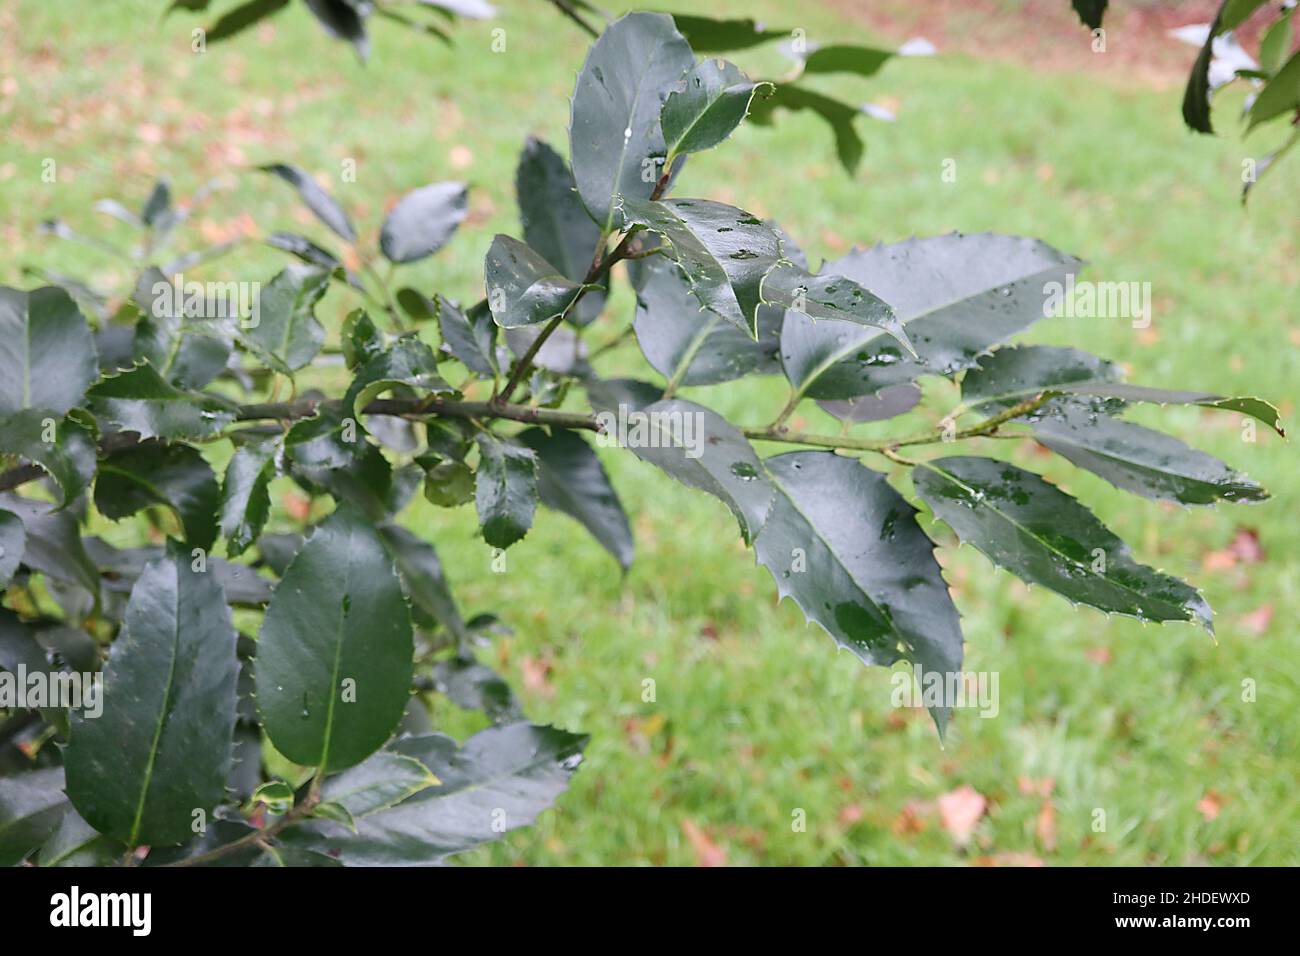 Ilex x koehneana 'Hoja de Castaño' Hoja de Castaño Holly – hojas de color verde oscuro con márgenes de espinoso espaciados uniformemente, enero, Inglaterra, Reino Unido Foto de stock